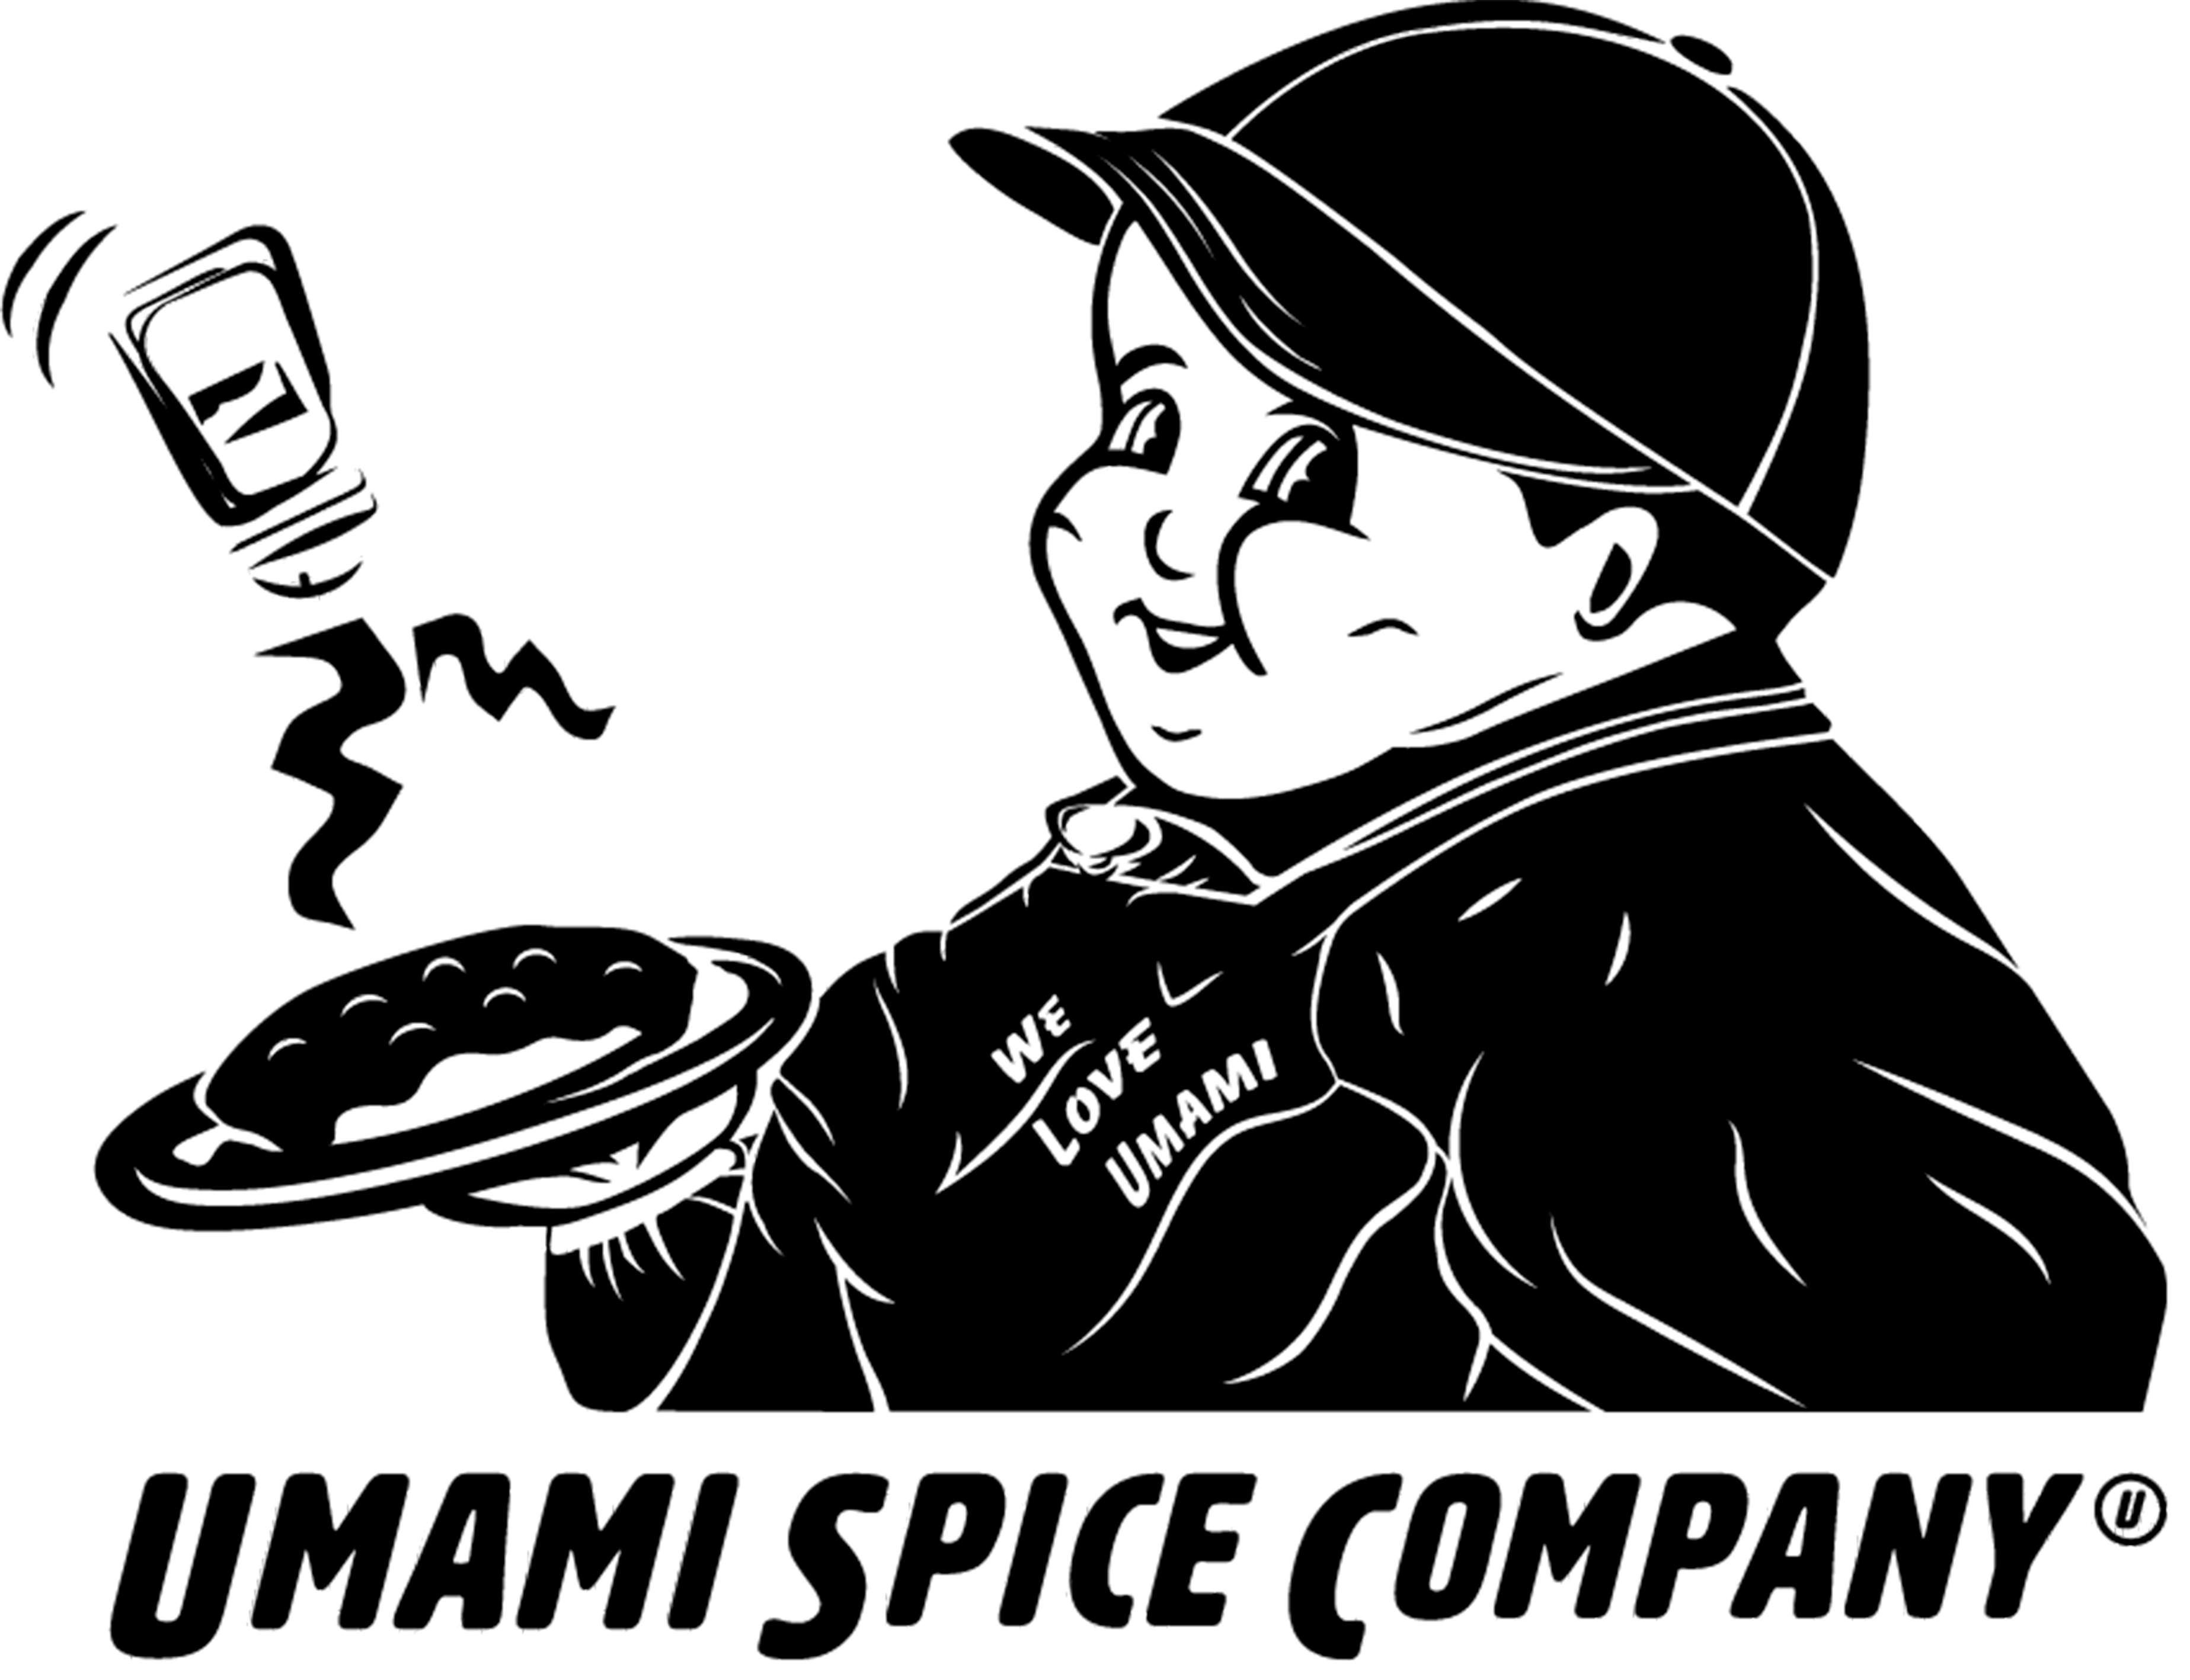 UMAMI SPICE COMPANY